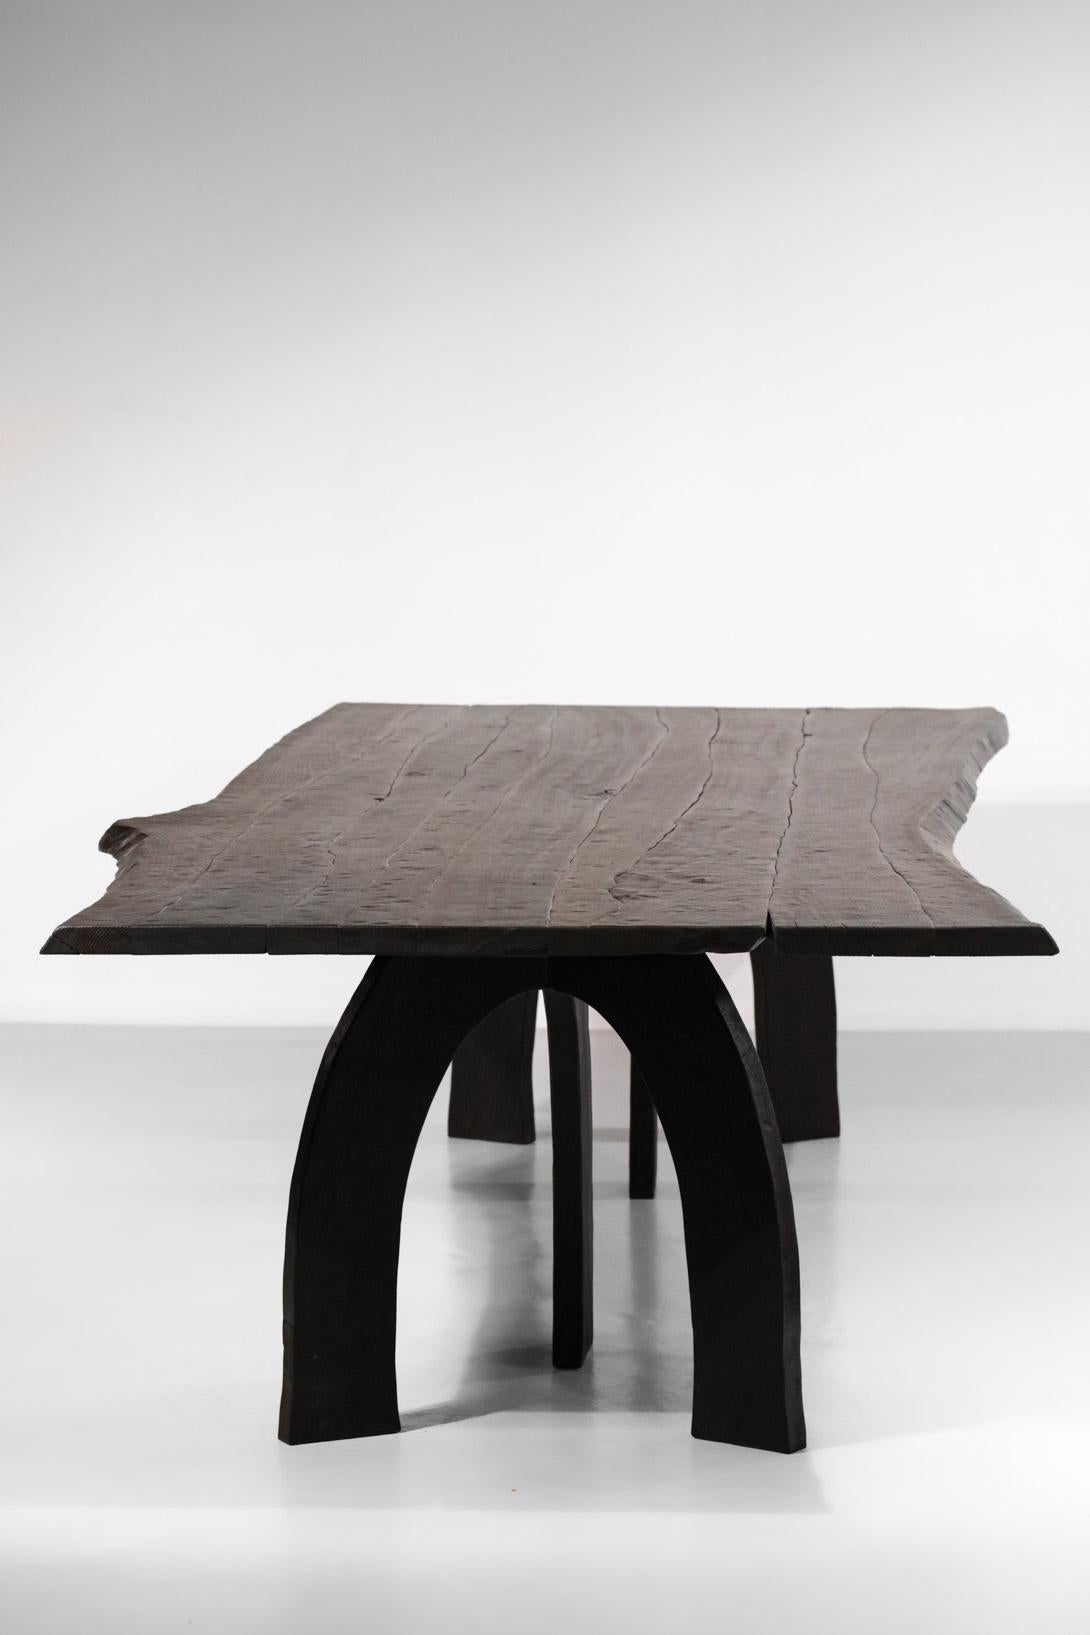 Sehr großer Esstisch aus gebranntem Massivholz, entworfen und handgefertigt von dem Tischler Vincent Vincent in Lyon. Dieser Tisch ergänzt die bereits auf der Website erhältlichen Stühle und Sessel zu einem einzigartigen Esszimmer-Set. 
Jeder Tisch